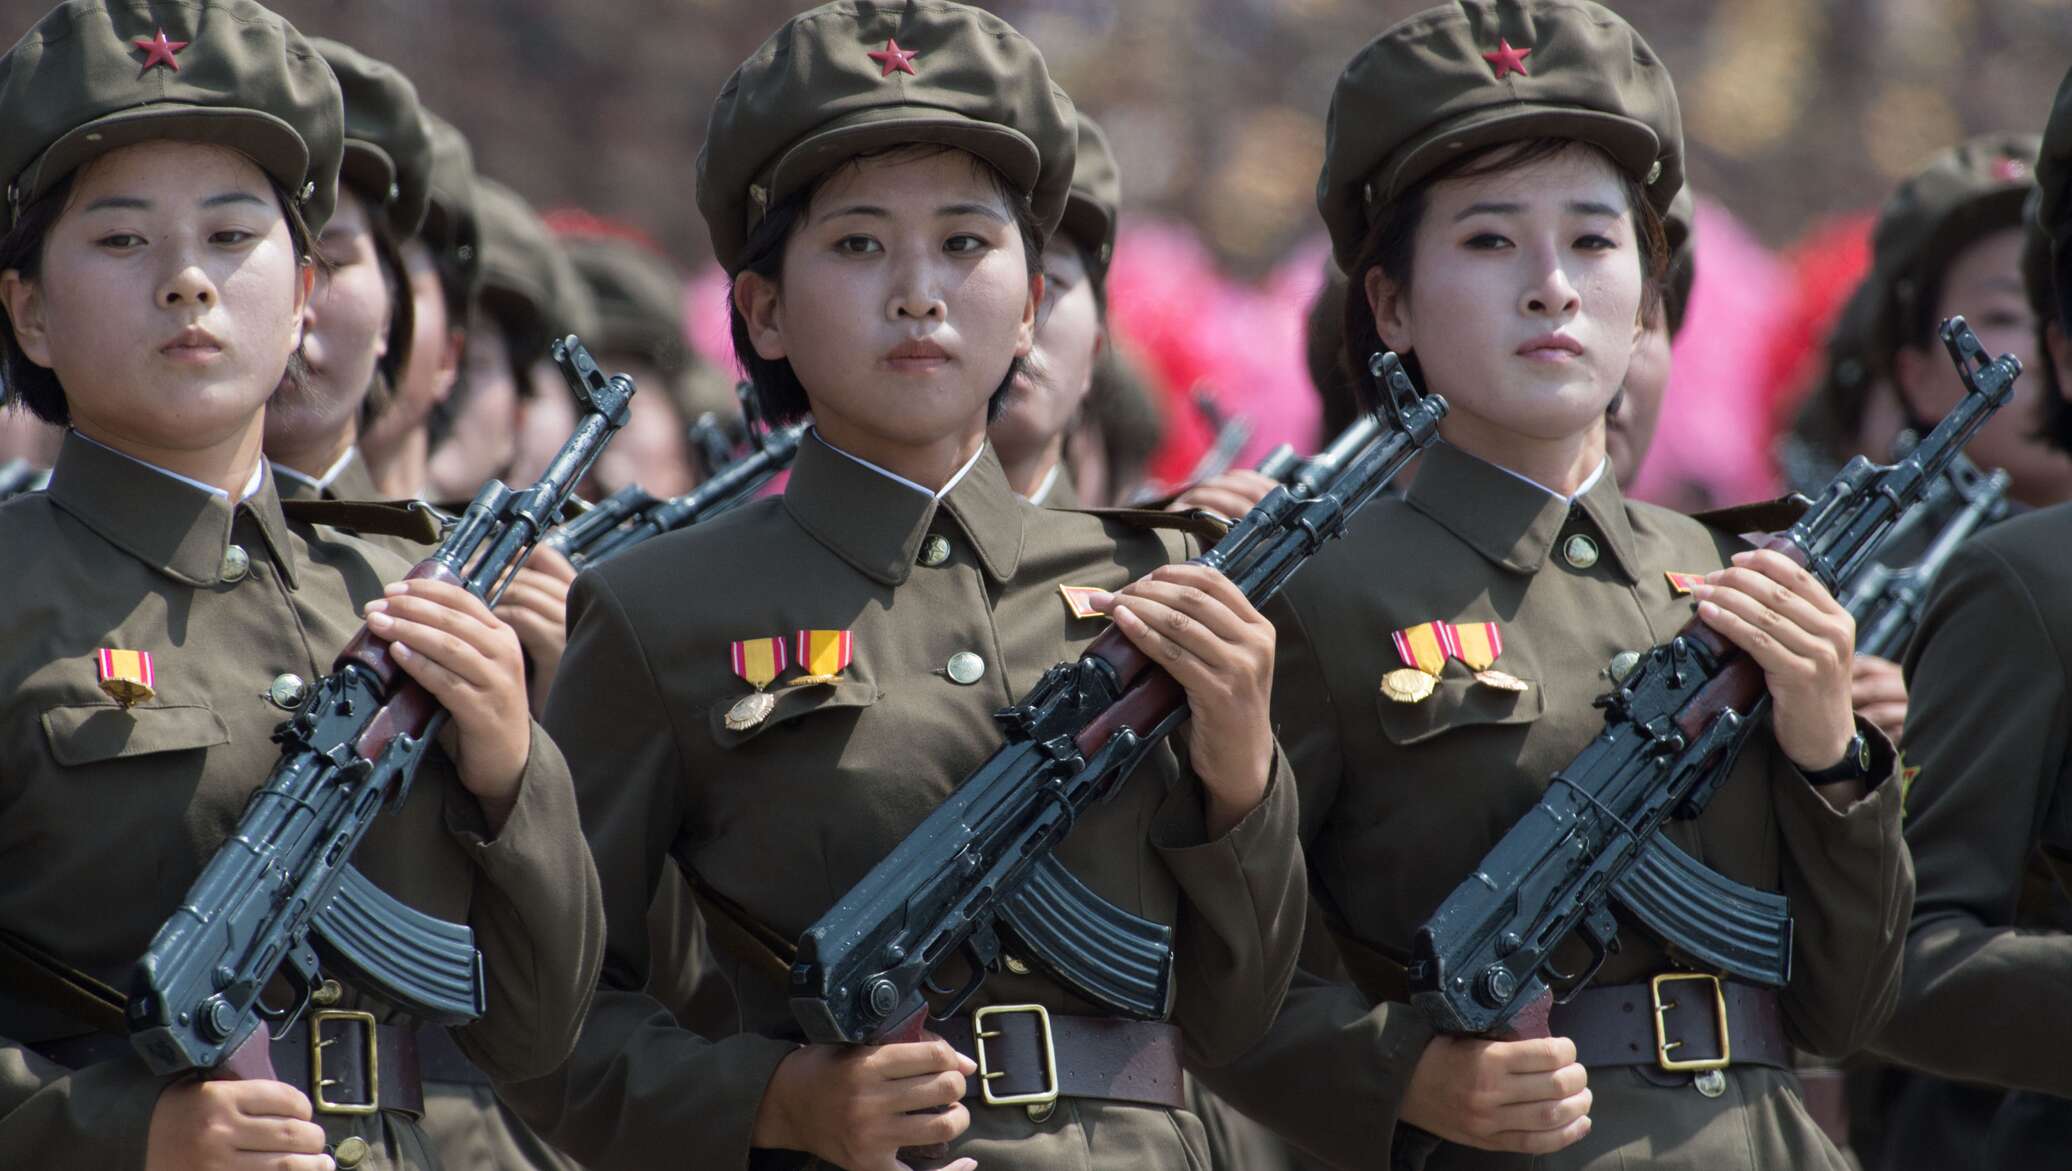 Какое время северной кореи. Северная Корея военные кореянки. Военная форма Северной Кореи. Северная Корея униформа солдаток. Солдат Северной Кореи и Южной Кореи.